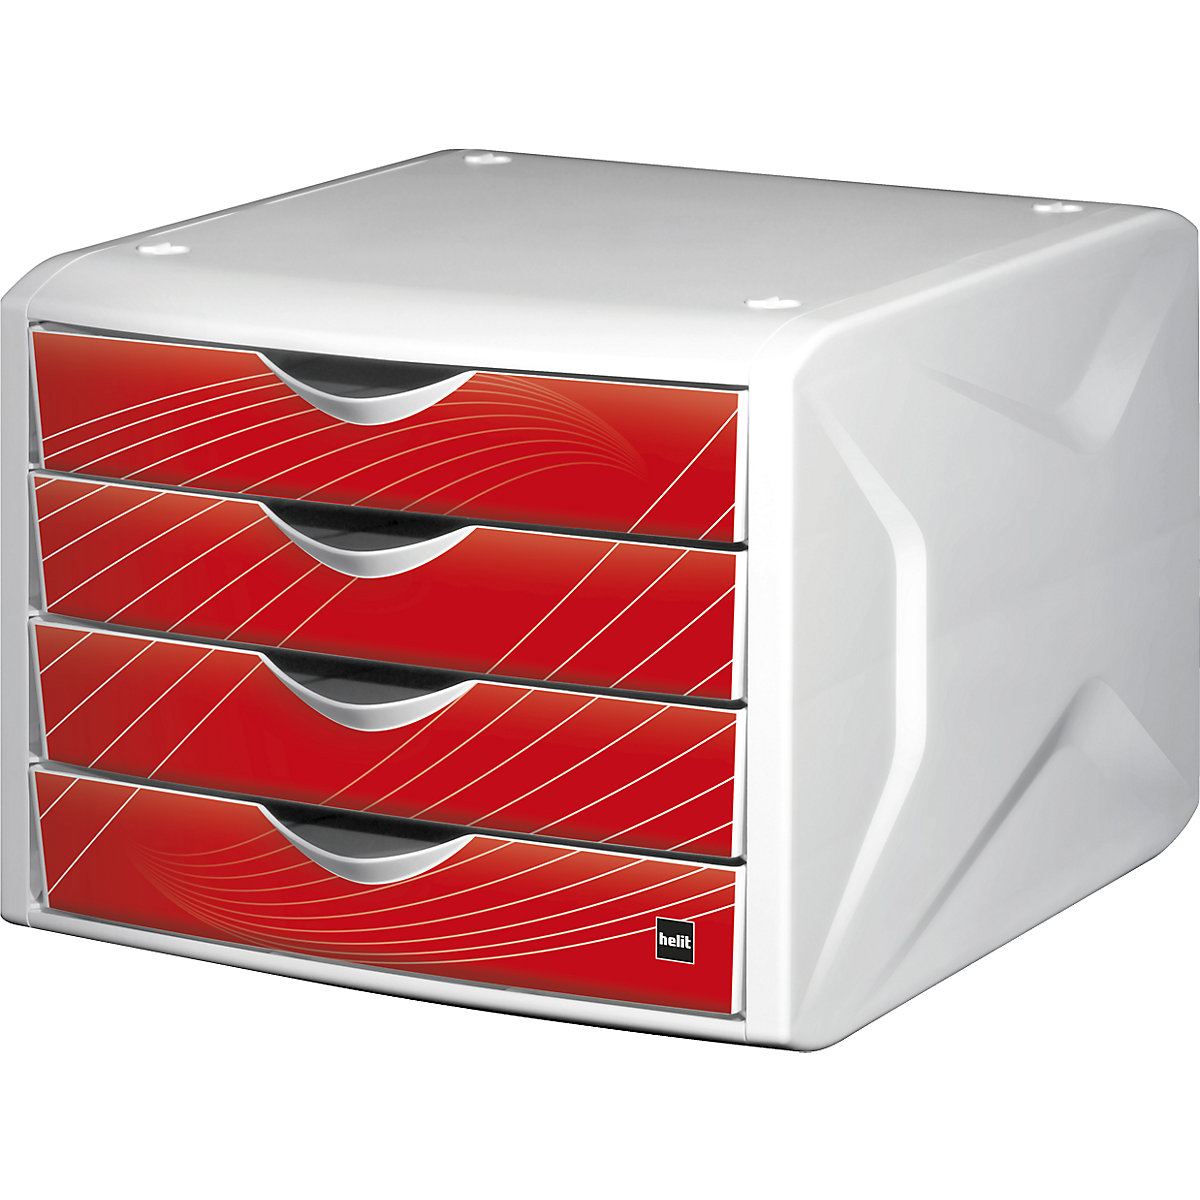 Ladebox – helit, h x b x d = 212 x 262 x 330 mm, VE = 5 stuks, ontwerp laden red rook-8